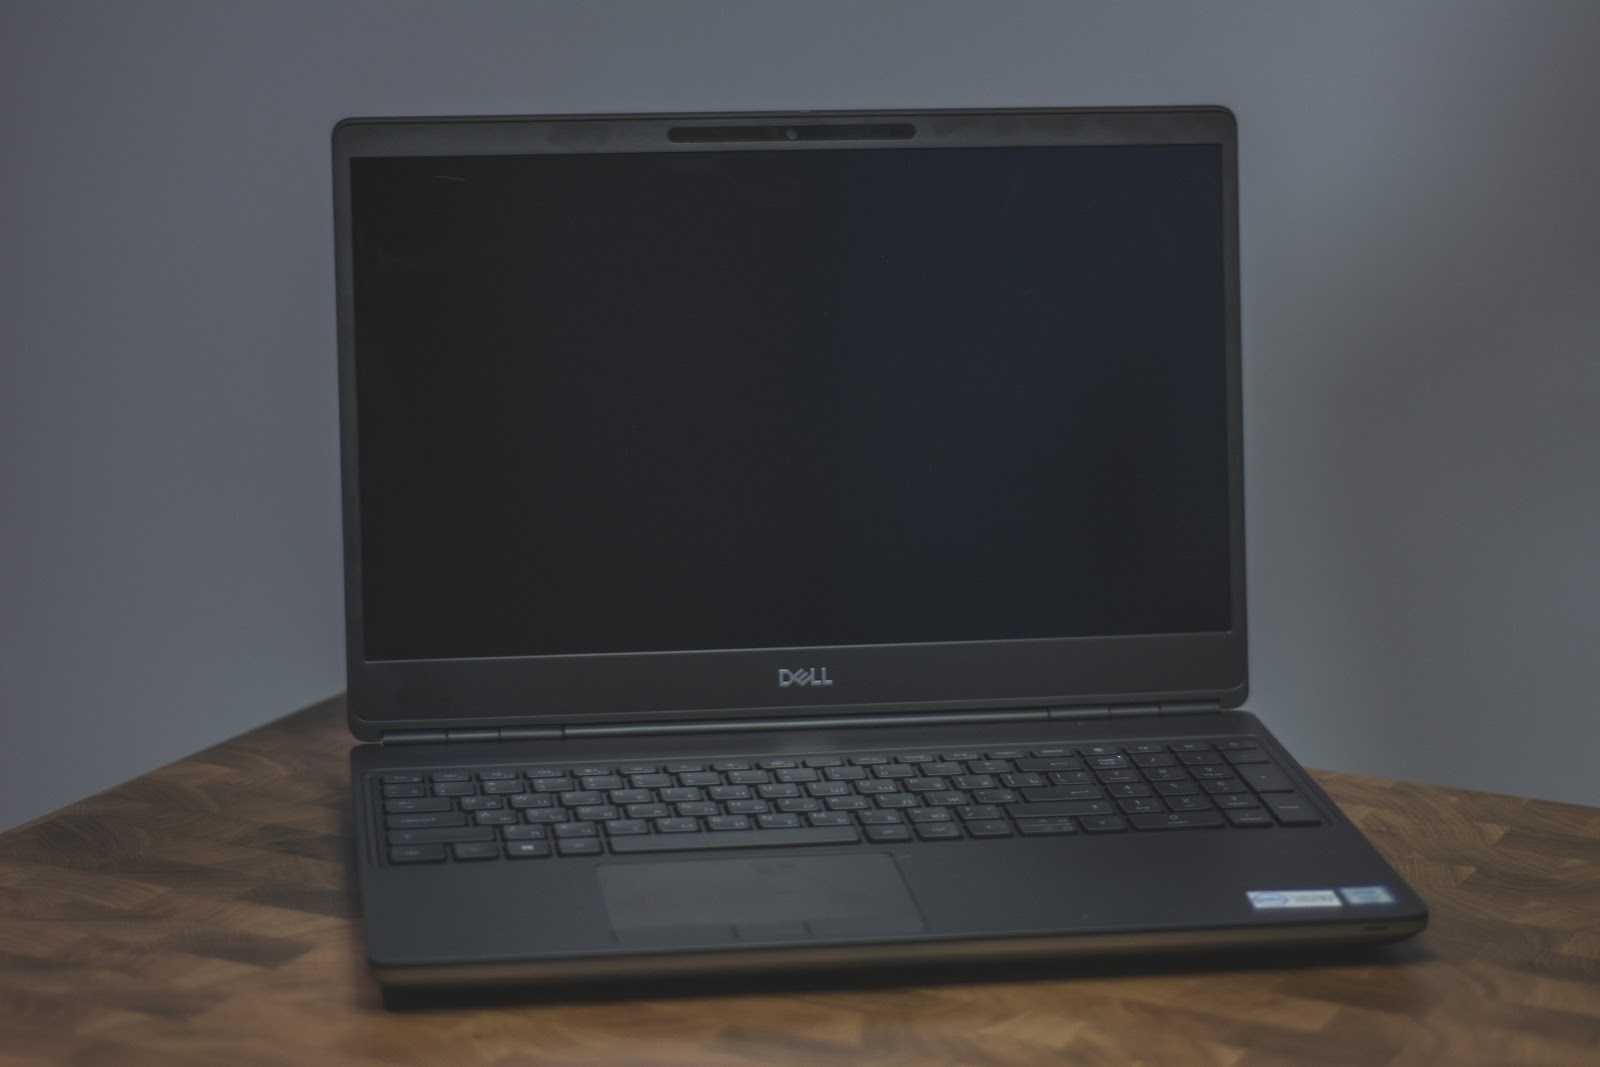 Dell Quickset выполняет множество функций в зависимости от компьютера  ноутбука, с которым он поставляется Некоторые